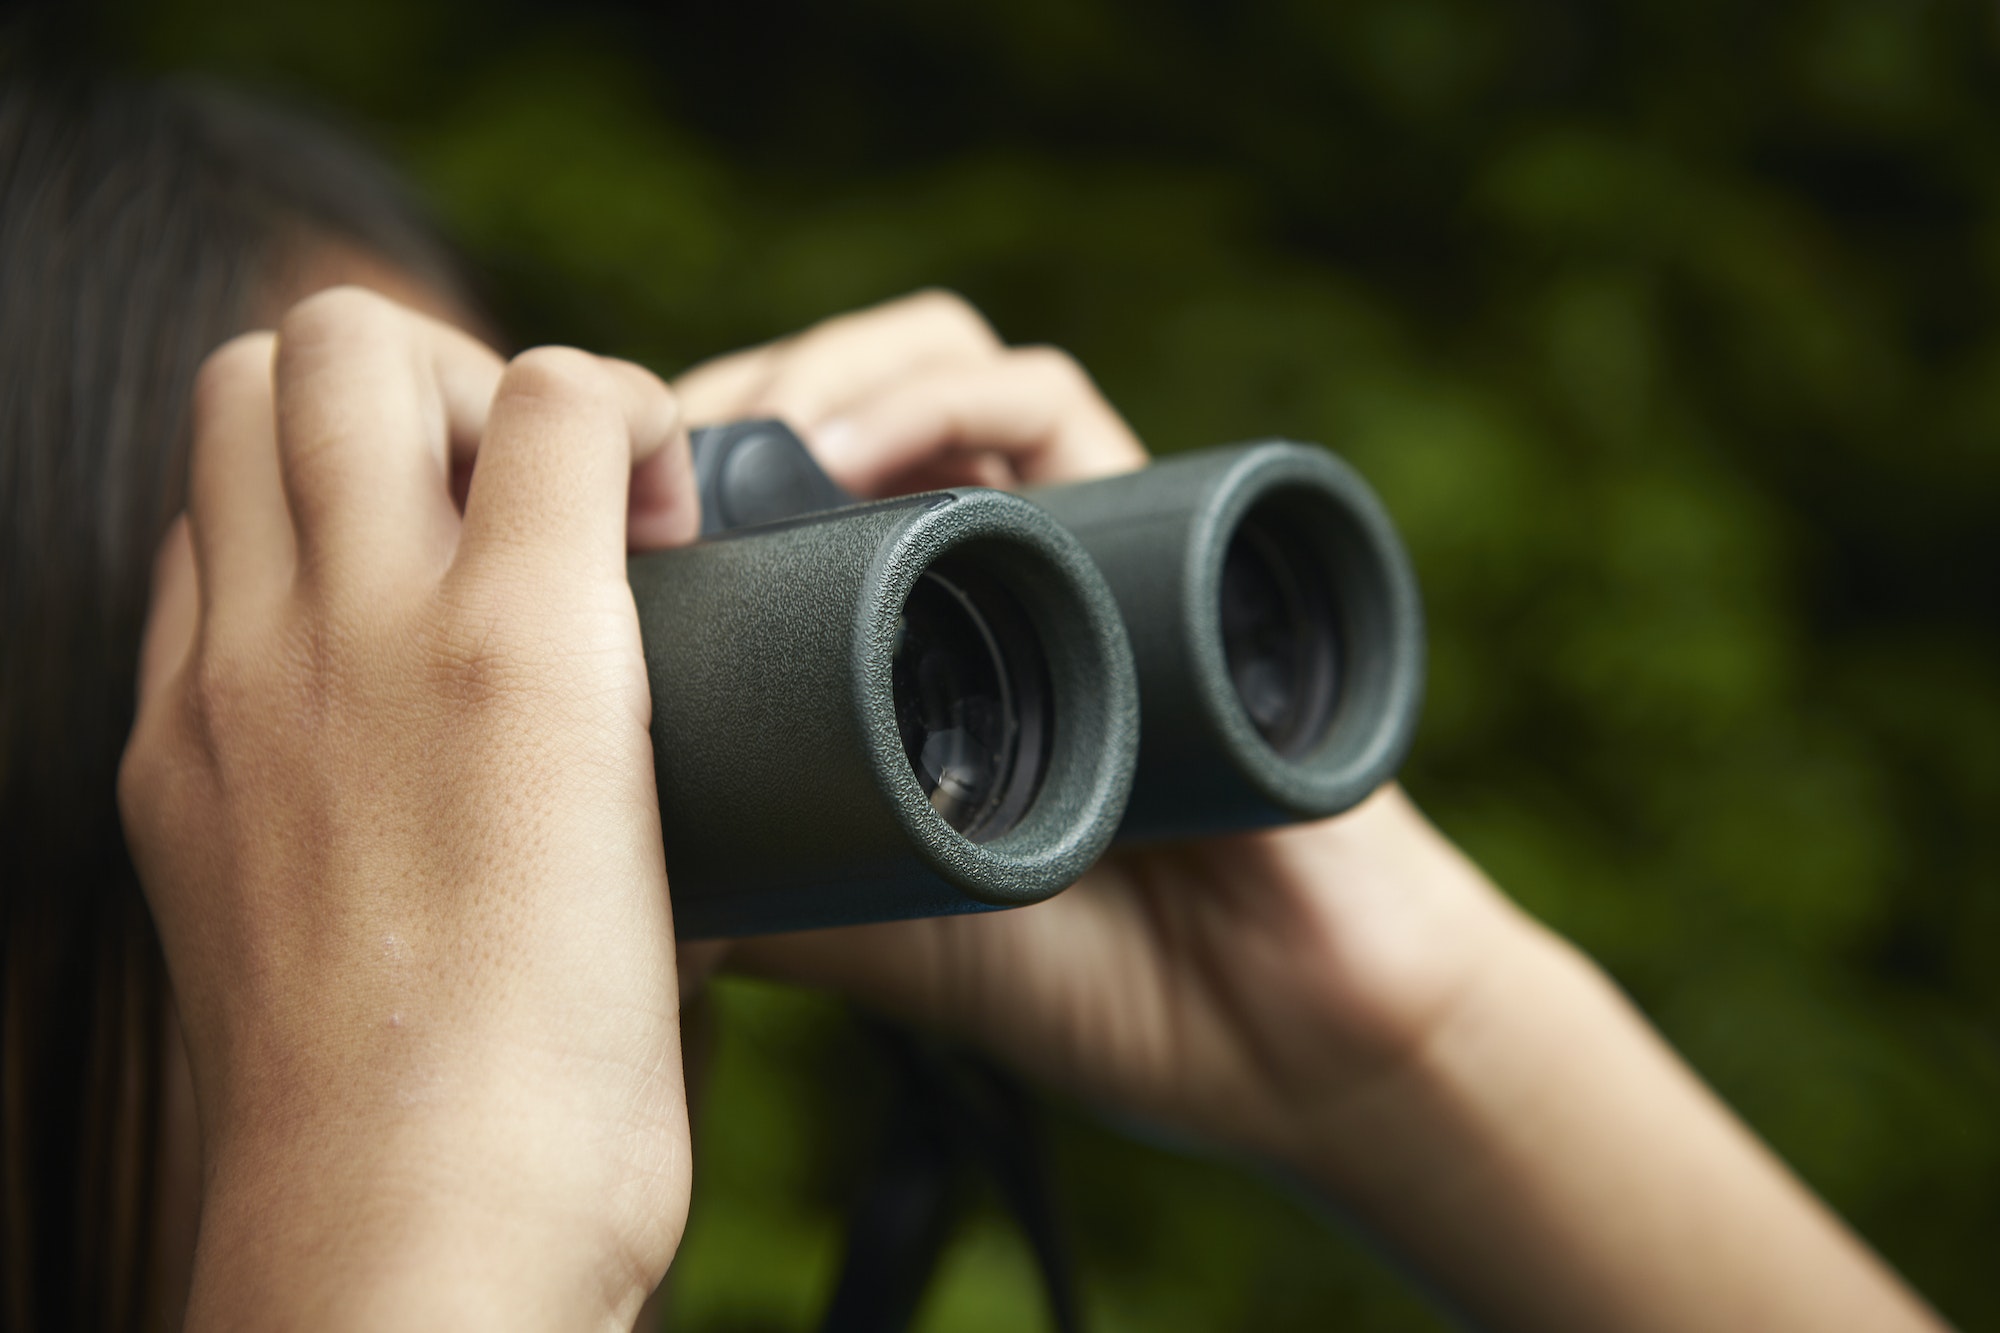 A young girl with bird watching binoculars.